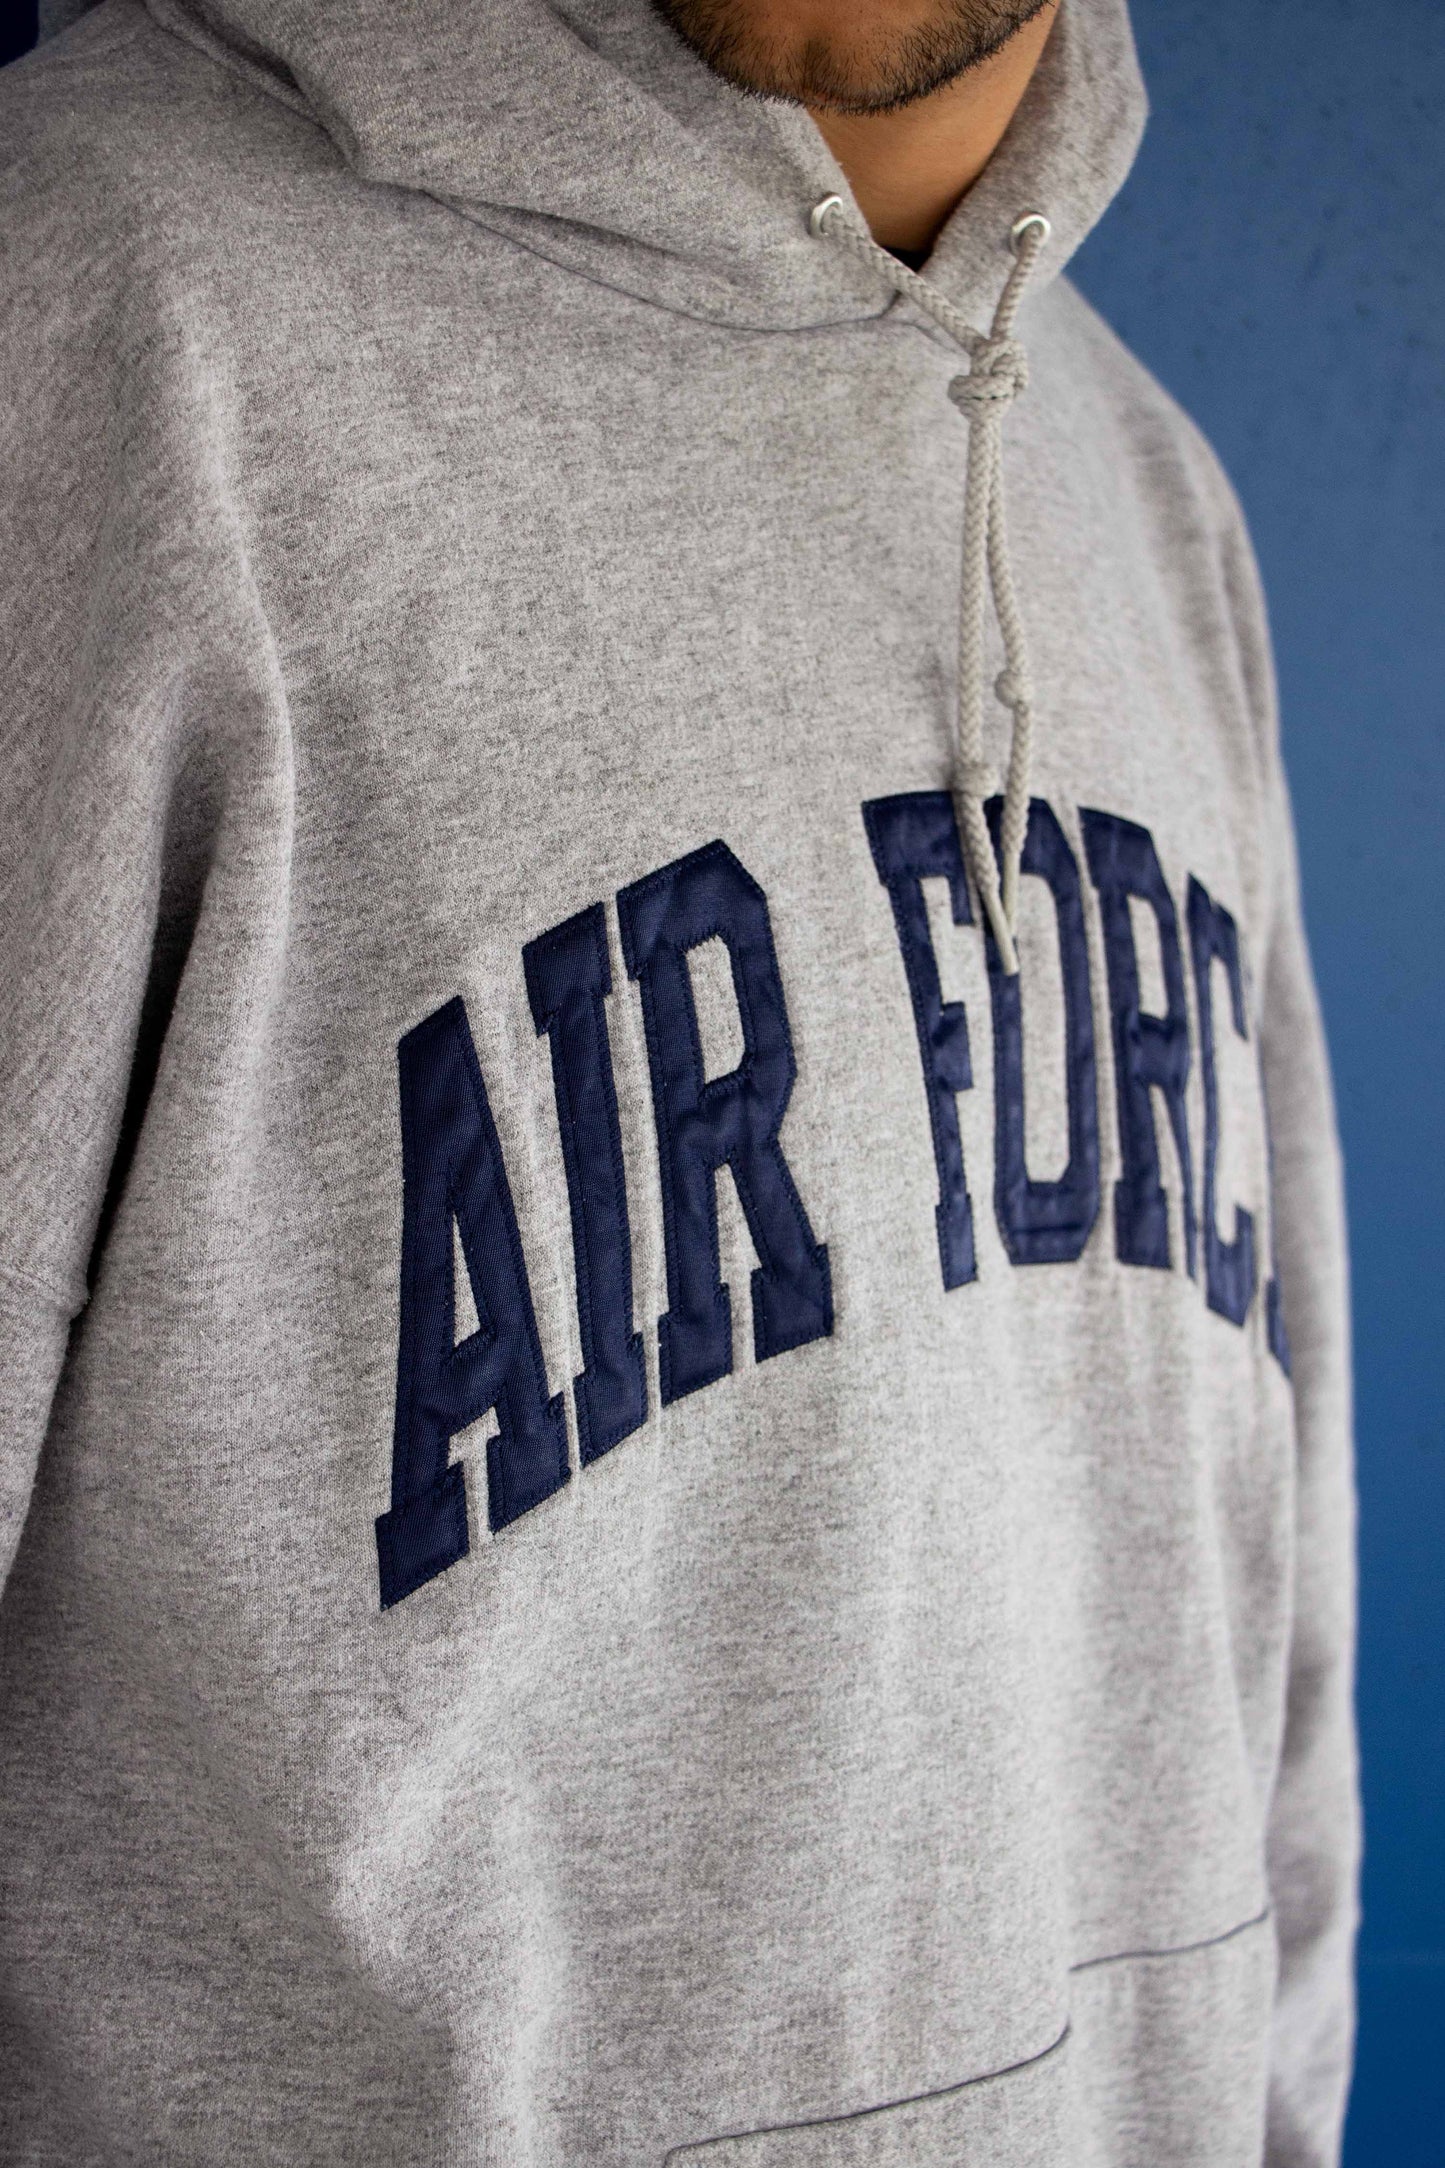 Hoodie Air Force